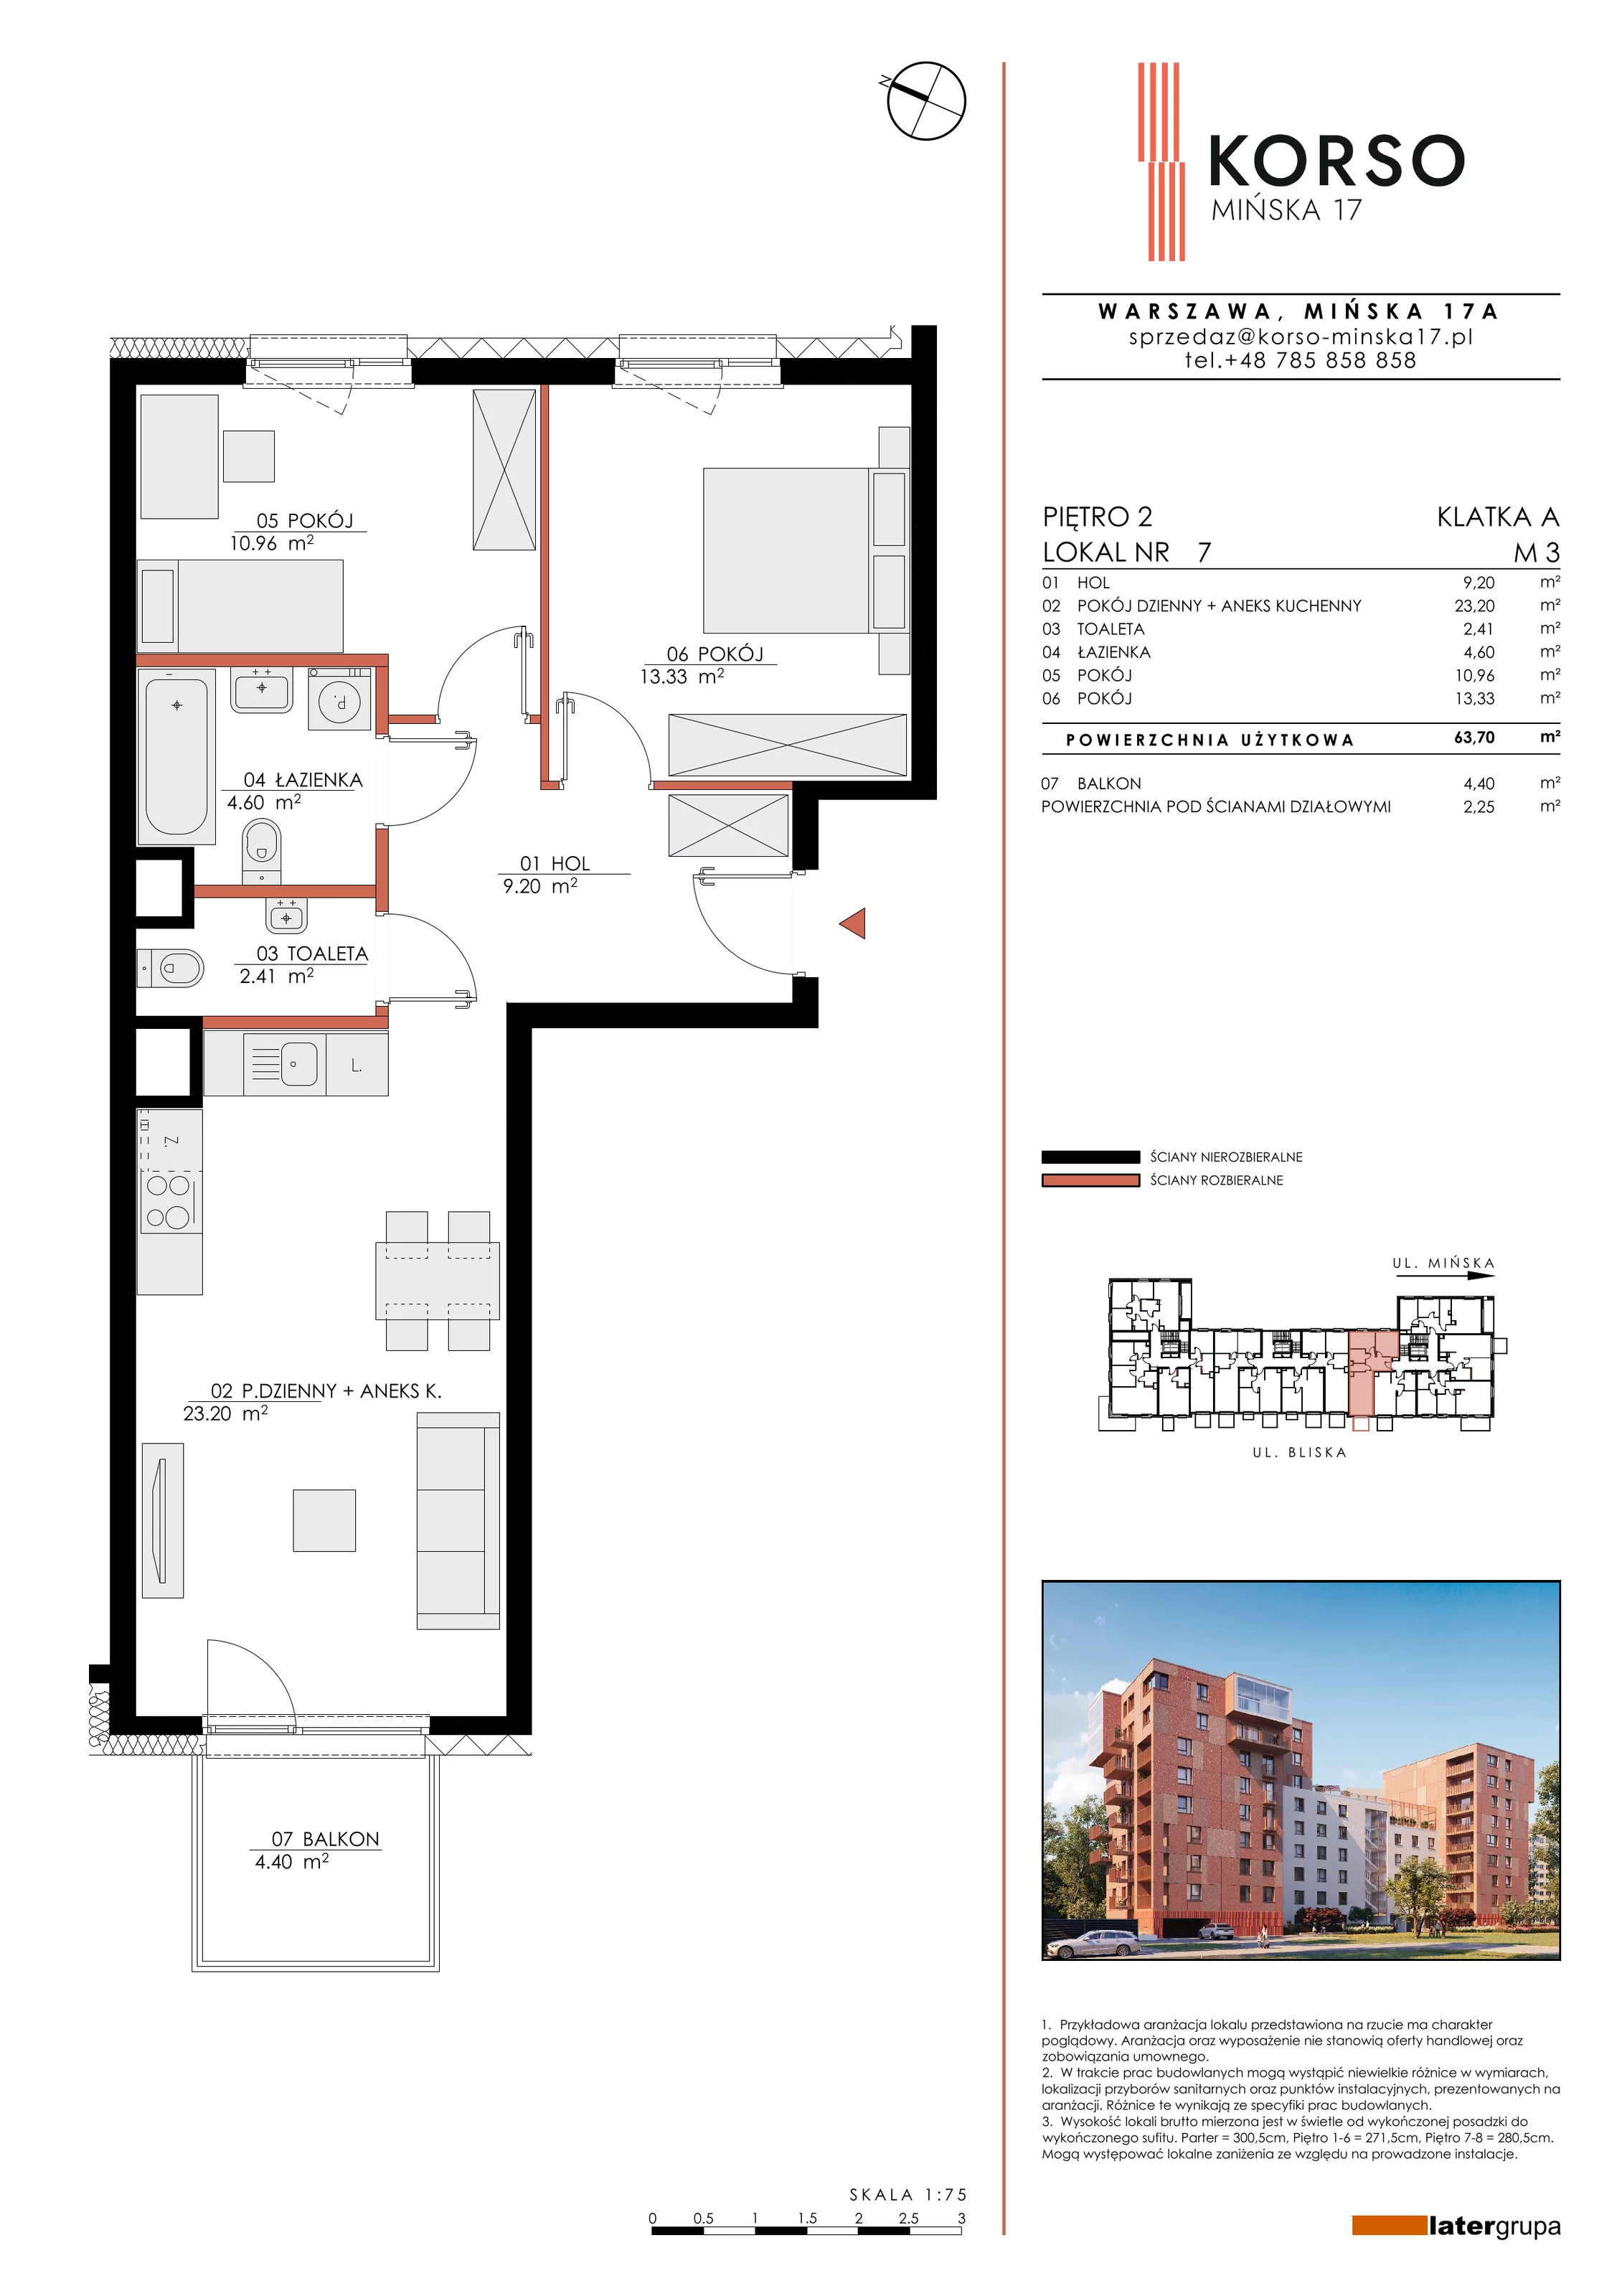 Mieszkanie 63,70 m², piętro 2, oferta nr 7, KORSO Mińska 17, Warszawa, Praga Południe, Kamionek, ul. Mińska 17